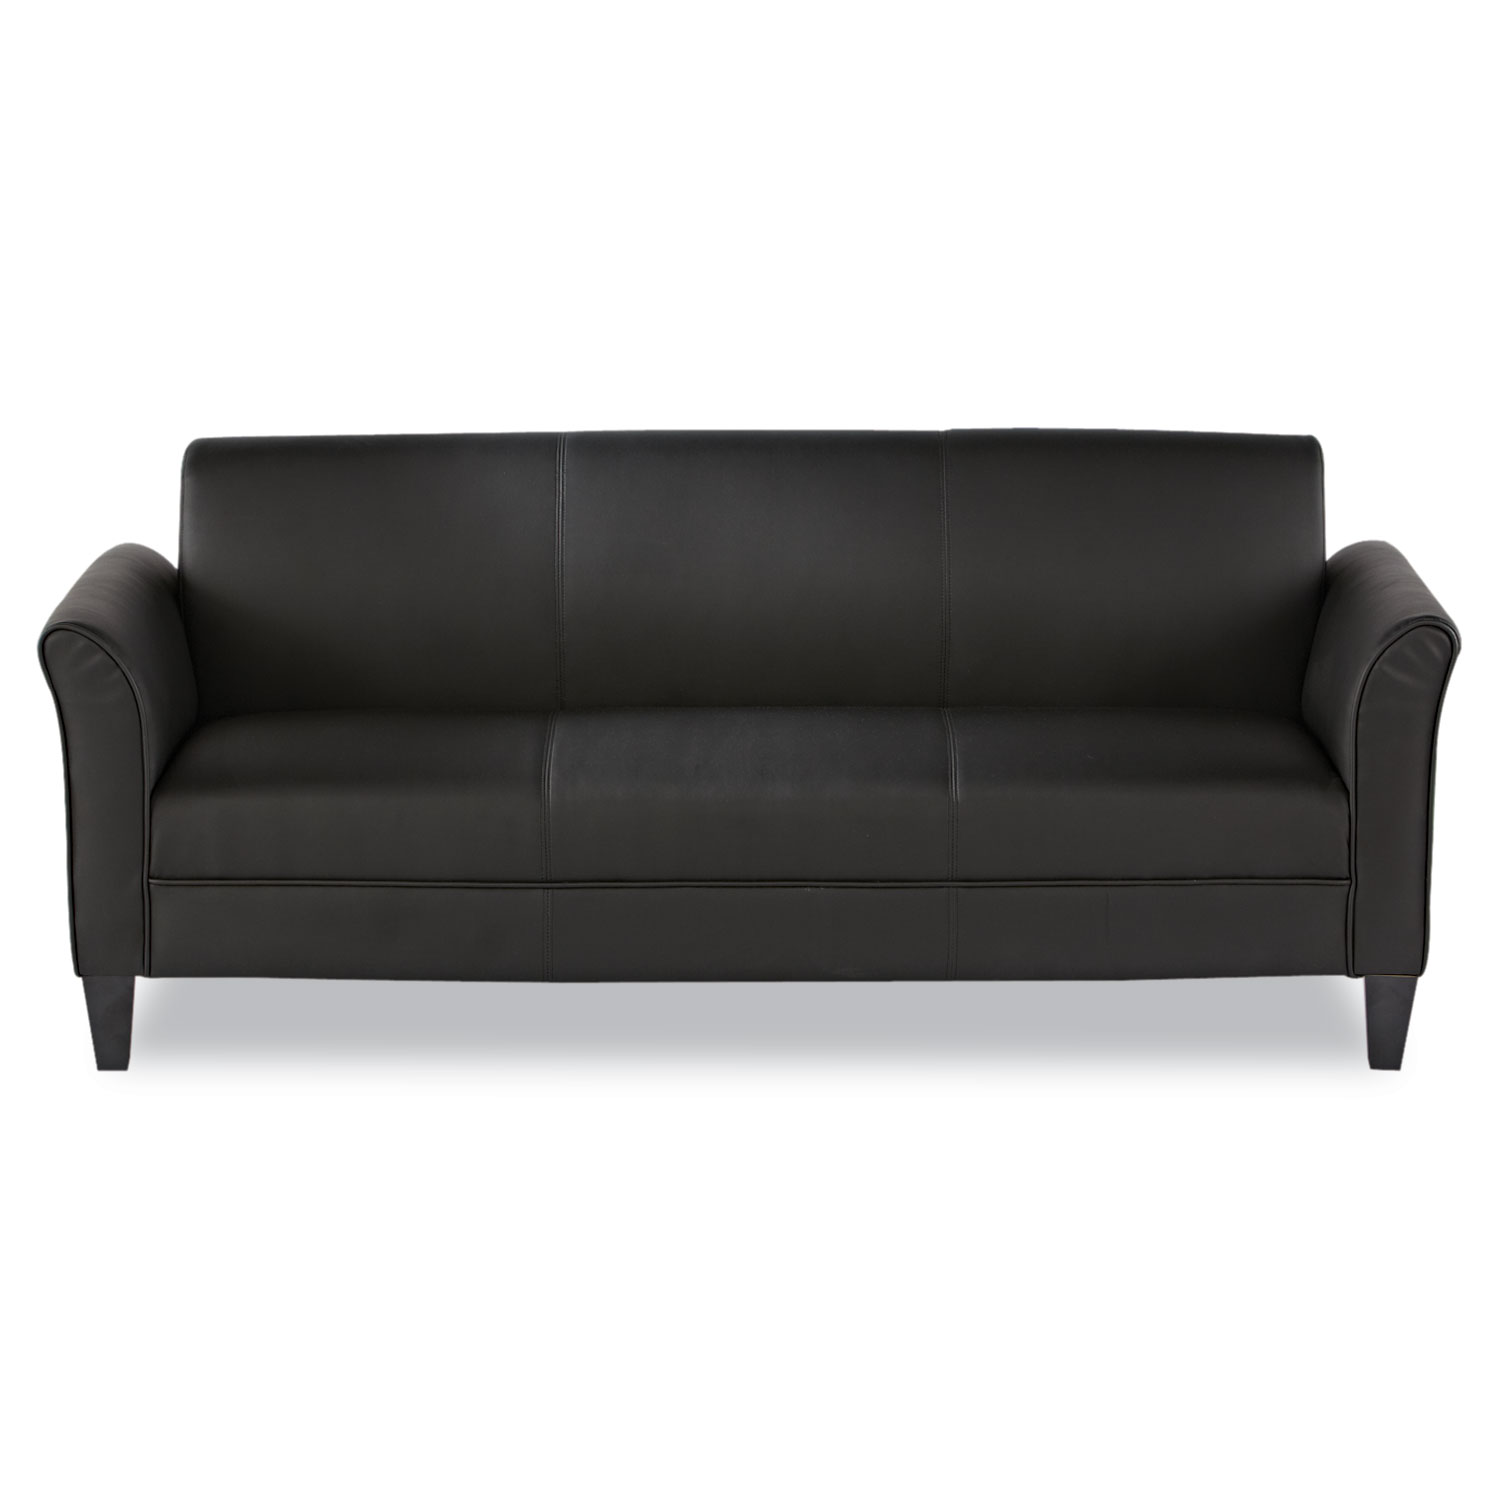  Alera ALERL21LS10B Alera Reception Lounge Furniture, 3-Cushion Sofa, 77w x 31.5d x 32h, Black (ALERL21LS10B) 